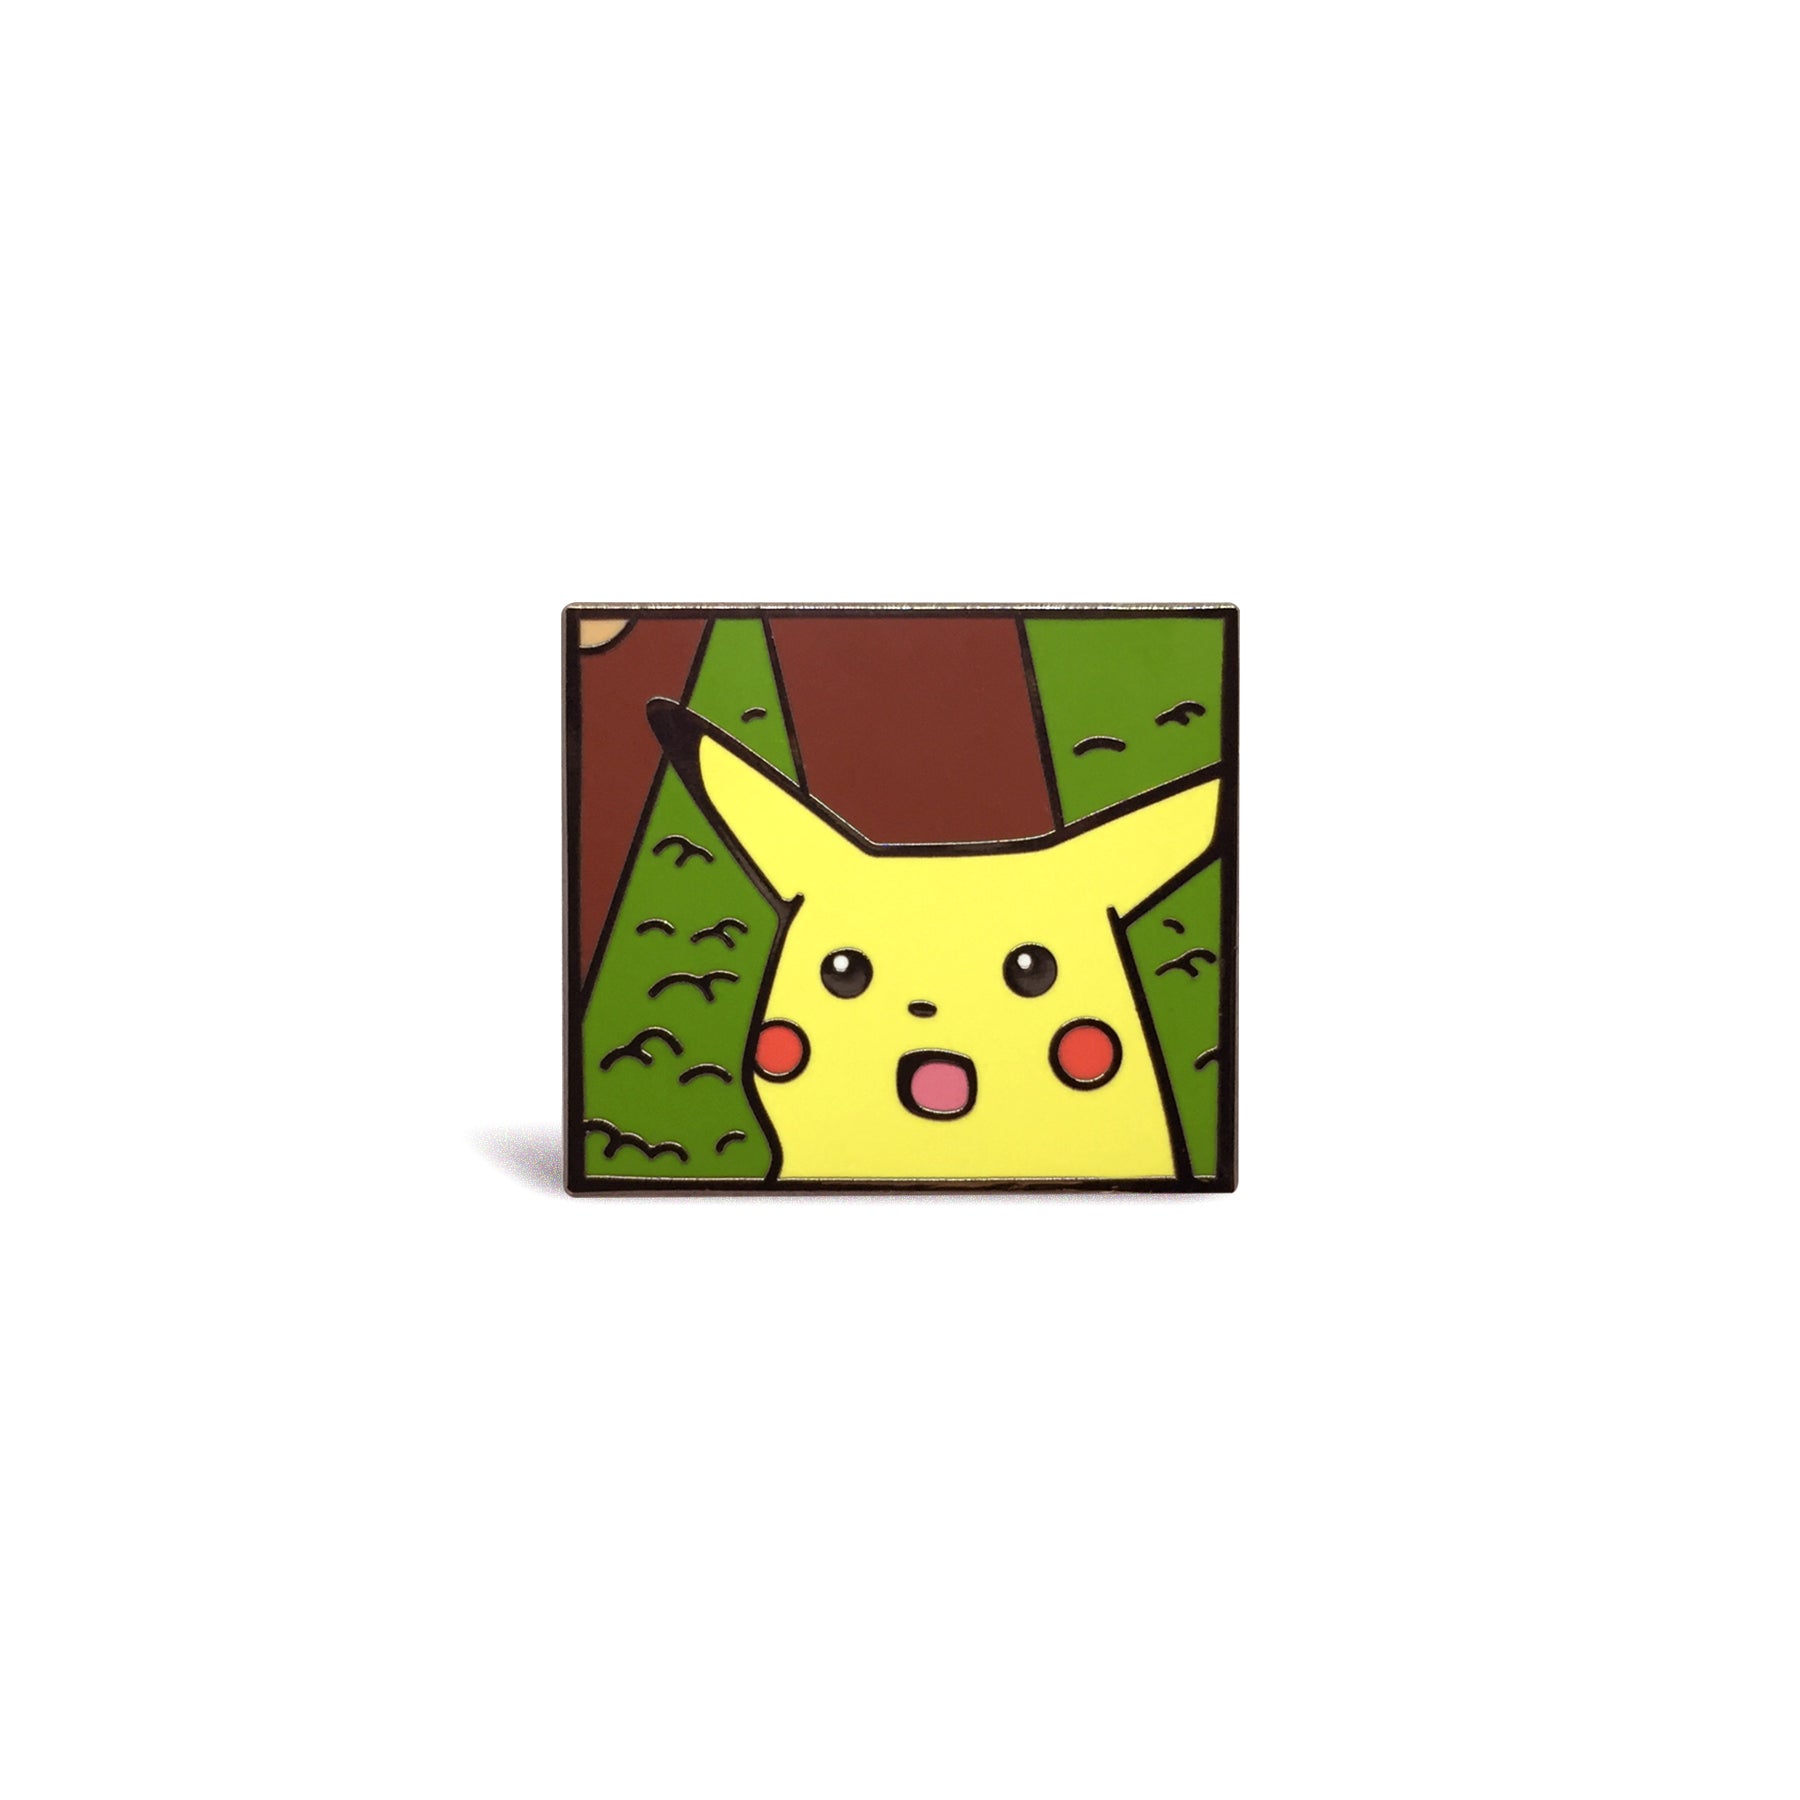 Surprised Pikachu Meme Hard Enamel Pin by PIN LADS — Kickstarter